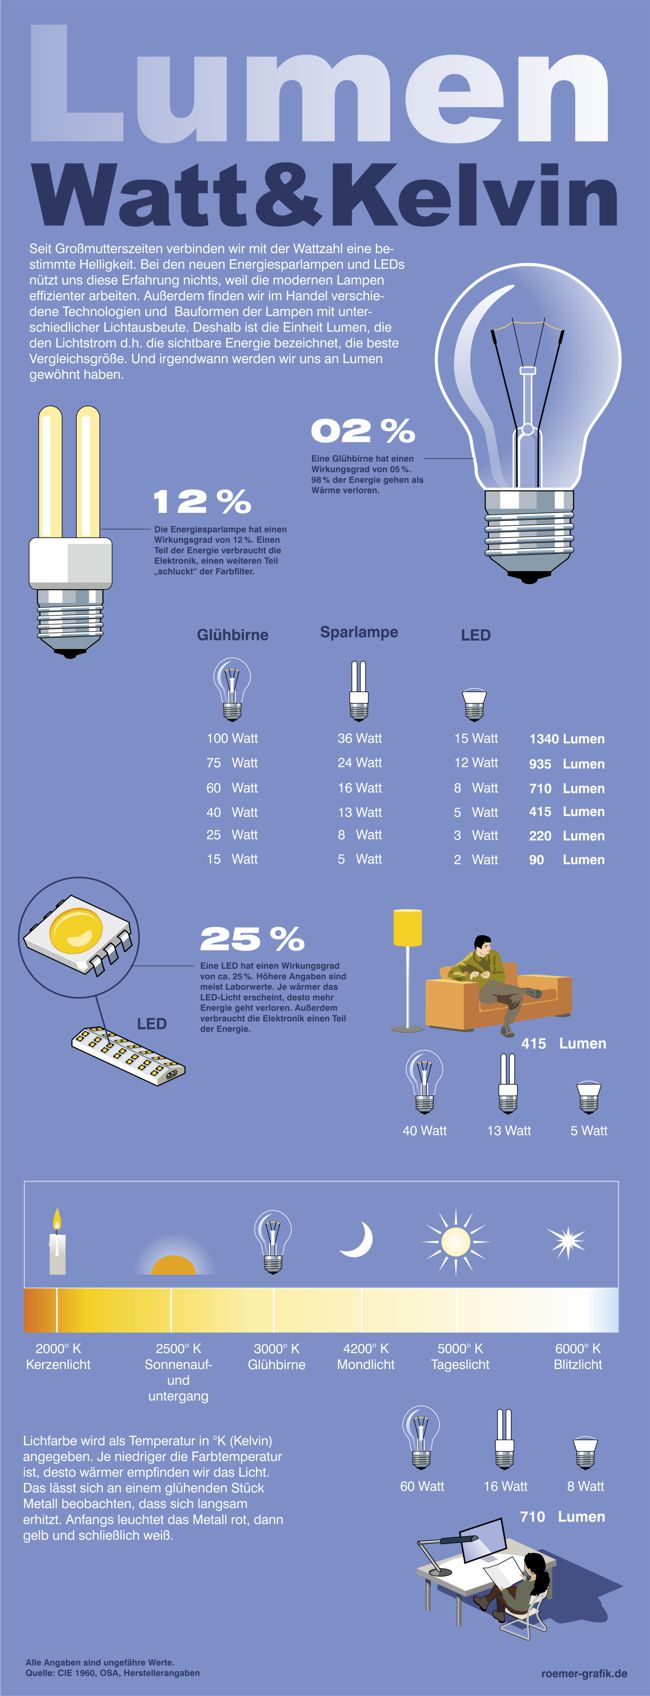 Seit Generationen verbinden wir bei einer Glühbirne eine Wattzahl 
	mit einer bestimmten Helligkeit. Das hat sich mit Einführung Energiesparlampen und LEDs geändert. Die Infigrafik fasst die wesentlichen 
	Informationen im Vergleich zusammen. Eine 100 Watt Glühbirne entspricht einer 36 Watt Energiesparlampe und einer 15Watt LED und hat 1340 Lumen. 
	Eine 75 Watt Glühbirne entspricht einer 24 Watt Energiesparlampe und einer 12 Watt LED bei 935 Lumen. Eine 60 Watt Glühbirne entspricht einer 15 Watt 
	Energiesparlampe und einer 8 Watt LED bei 710 Lumen. Eine 40 Watt Glühbirne entspricht einer 13 Watt Energiesparlampe und einer 5 Watt LED bei 415 Lumen. 2000° 
	Kelvin entsprechen der Lichtfarbe des Kerzenlichtes, 2500° K der Farbtemperatur des Sonnenauf- und untergangs, 3000° Kelvin der Farbtemperatur einer Glühbirne, 
	4200° Kelvin der Farbtemperatur des Mondlichtes und 6000° Kelvin der arbtemperatur des Sonnenlichtes.